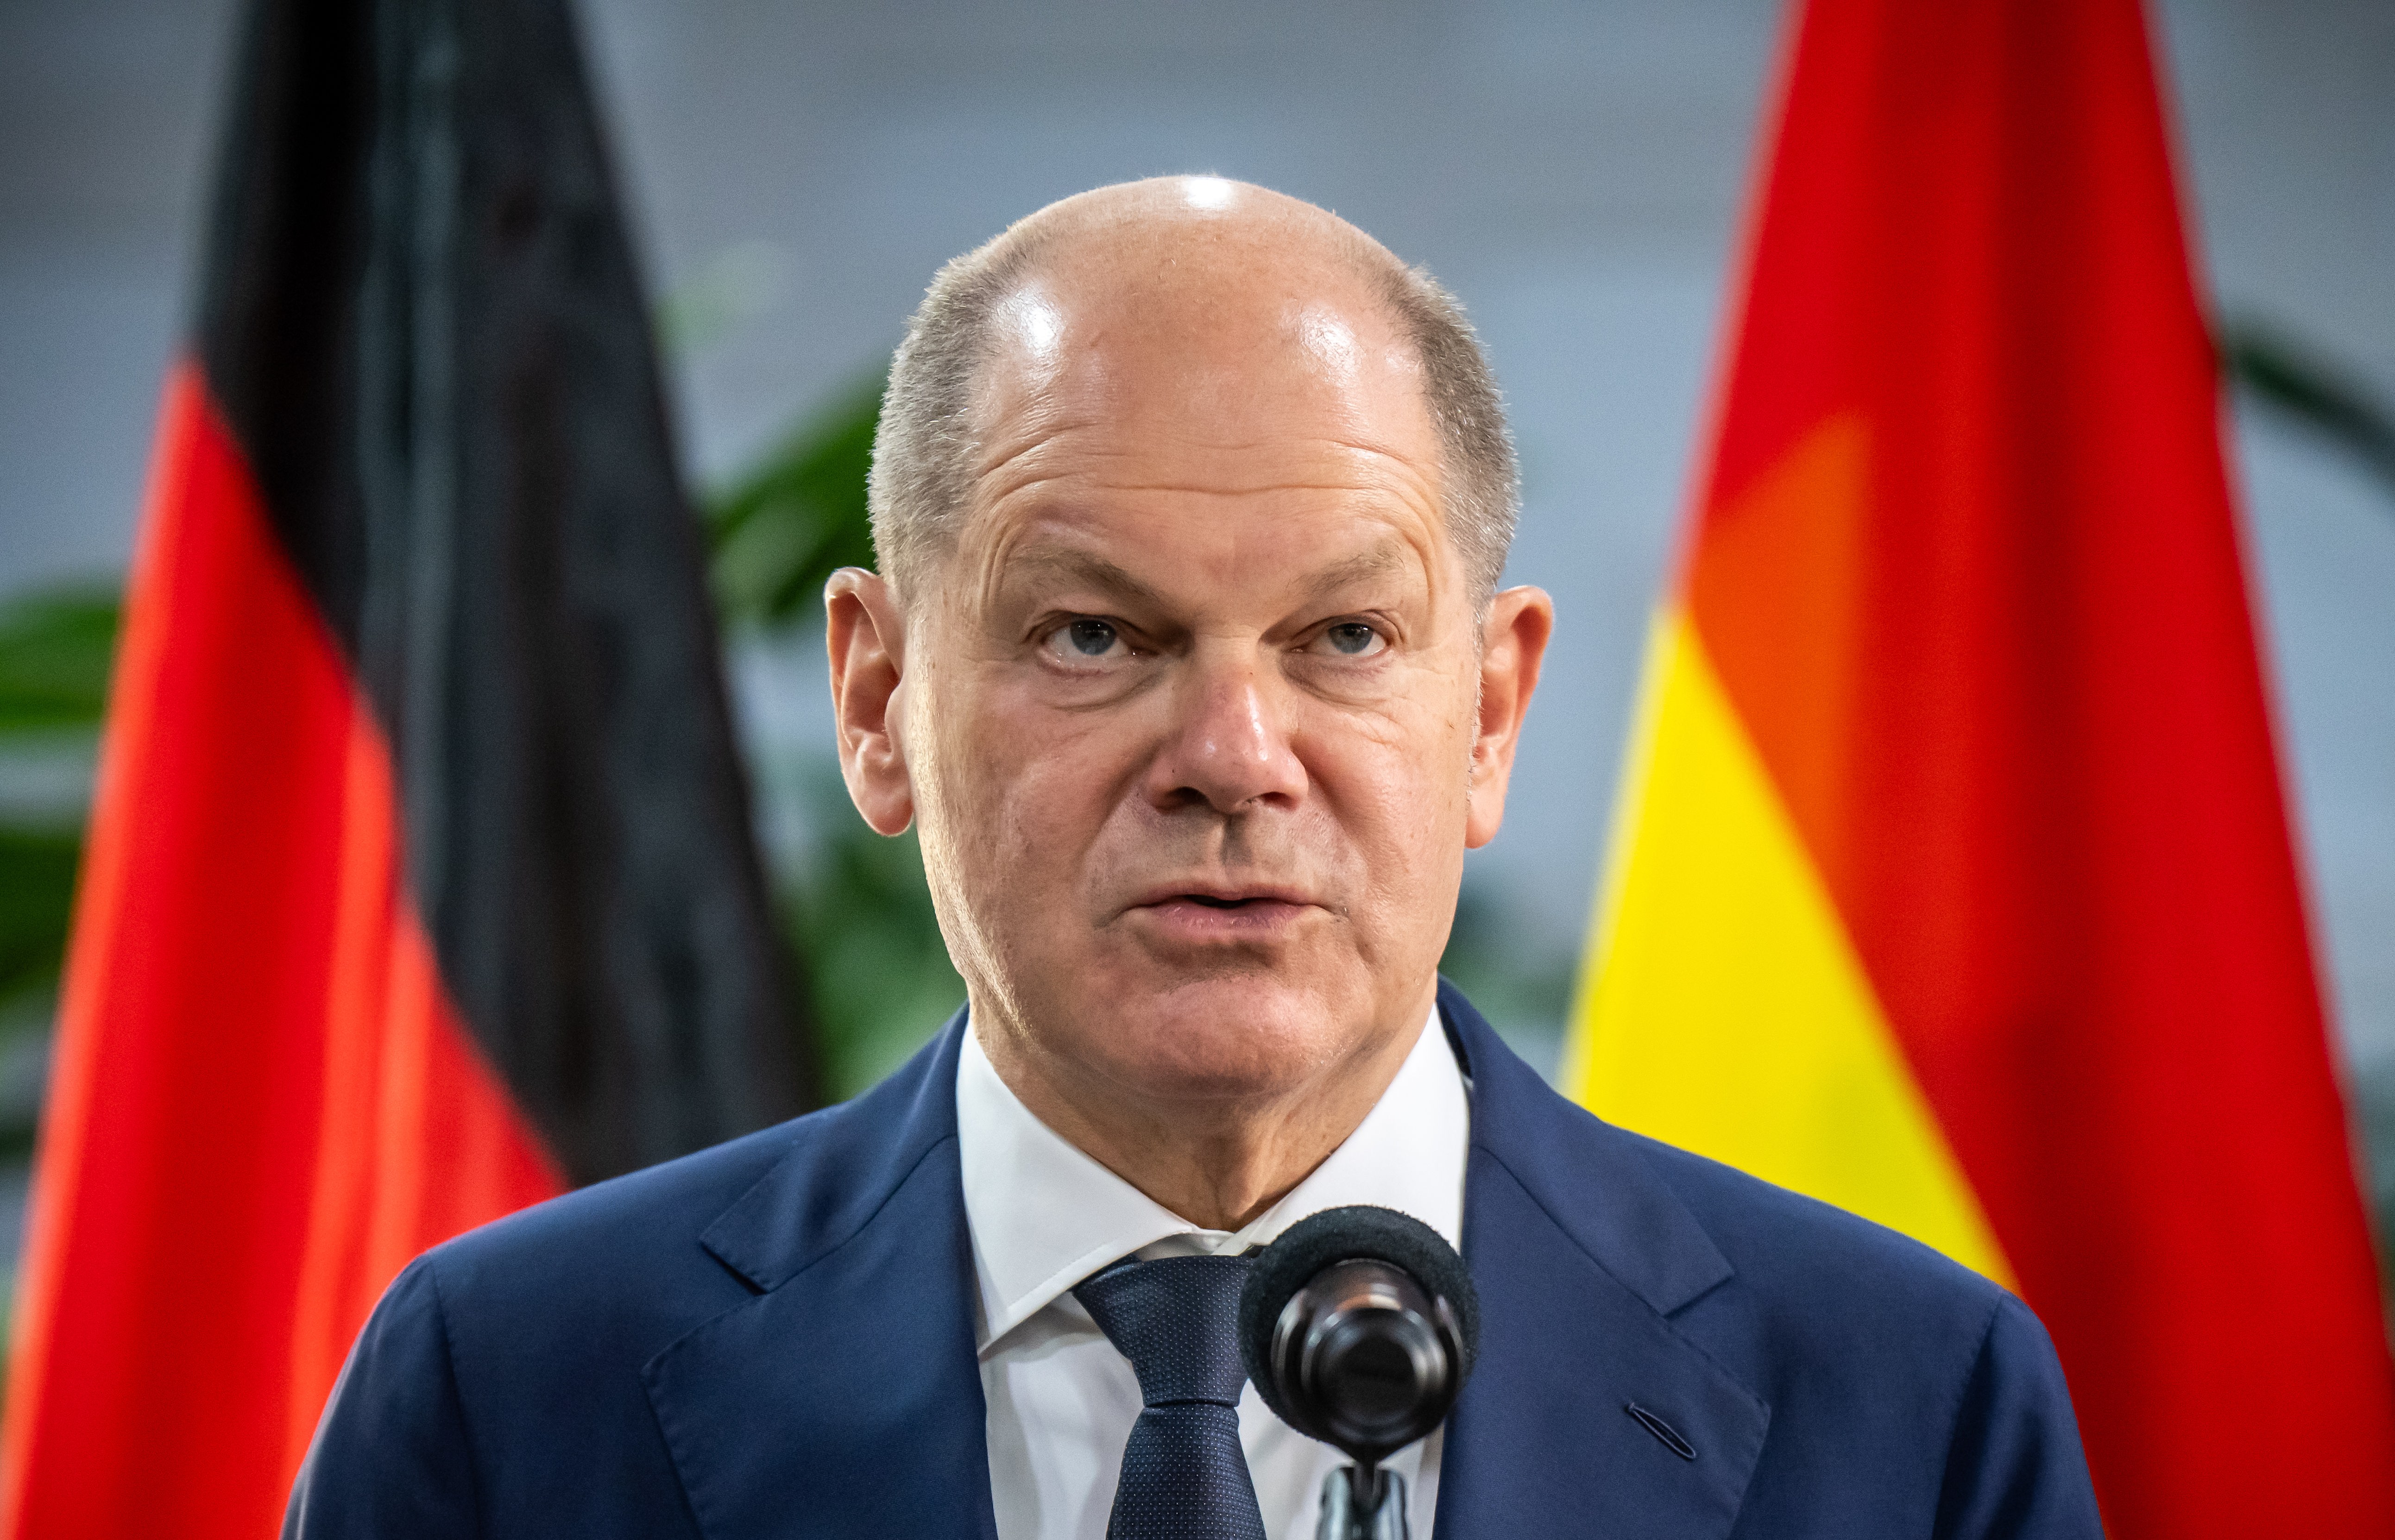 Migrationsdebatte - Bundeskanzler und Innenministerin schauen kritisch auf Forderung nach Asylzentren in Drittstaaten - Vorstoß aus CDU und FDP